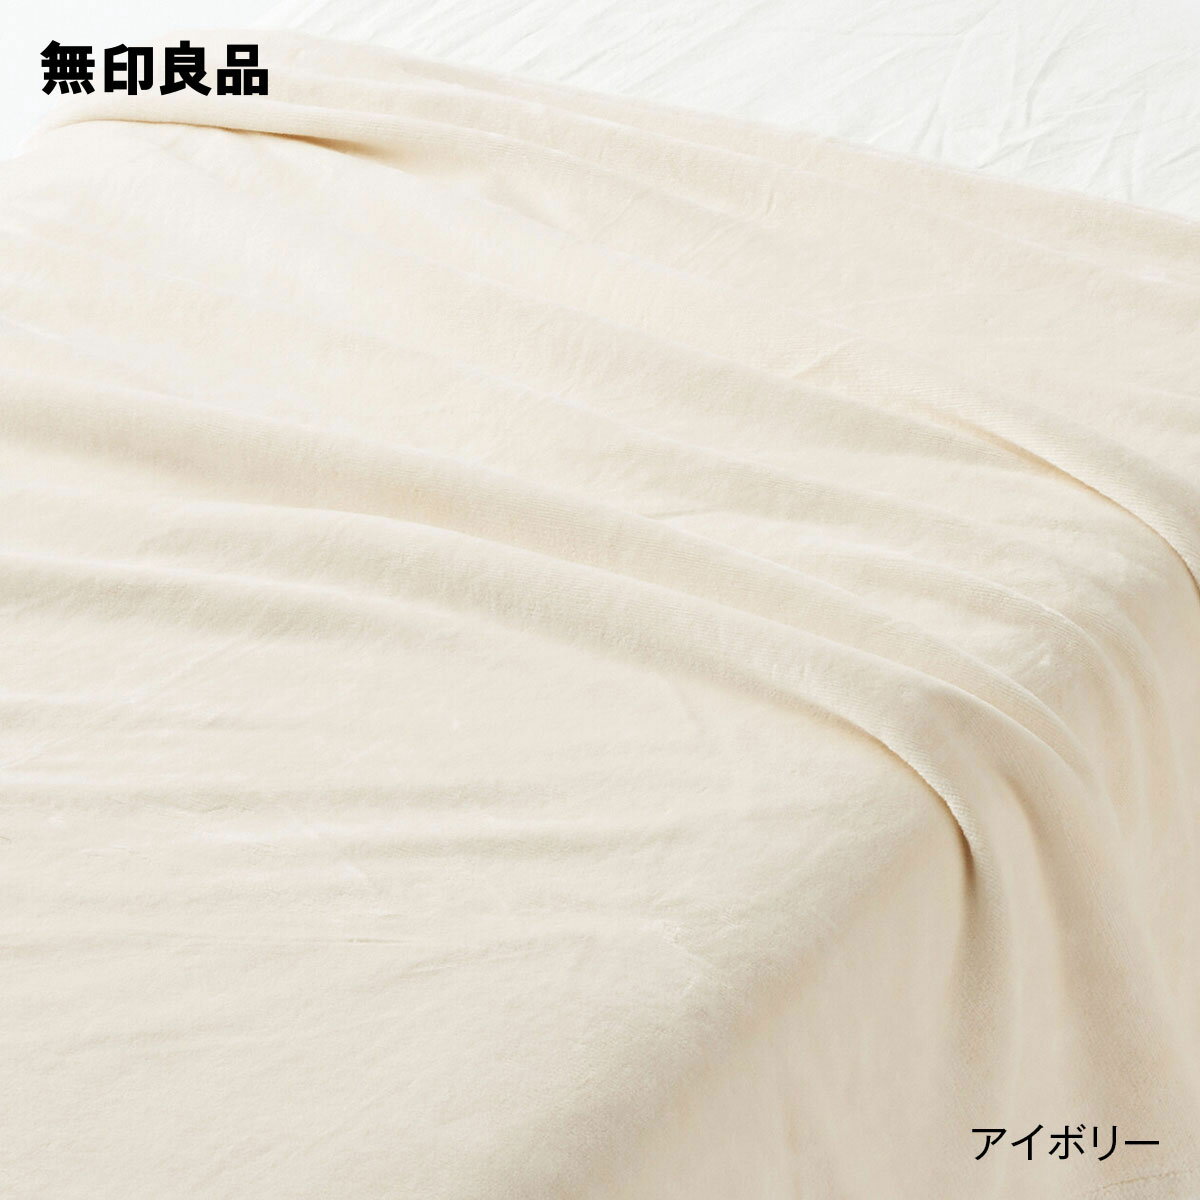 無印良品 ブランケット 【無印良品 公式】【シングル】あったか綿 毛布・140×200cm